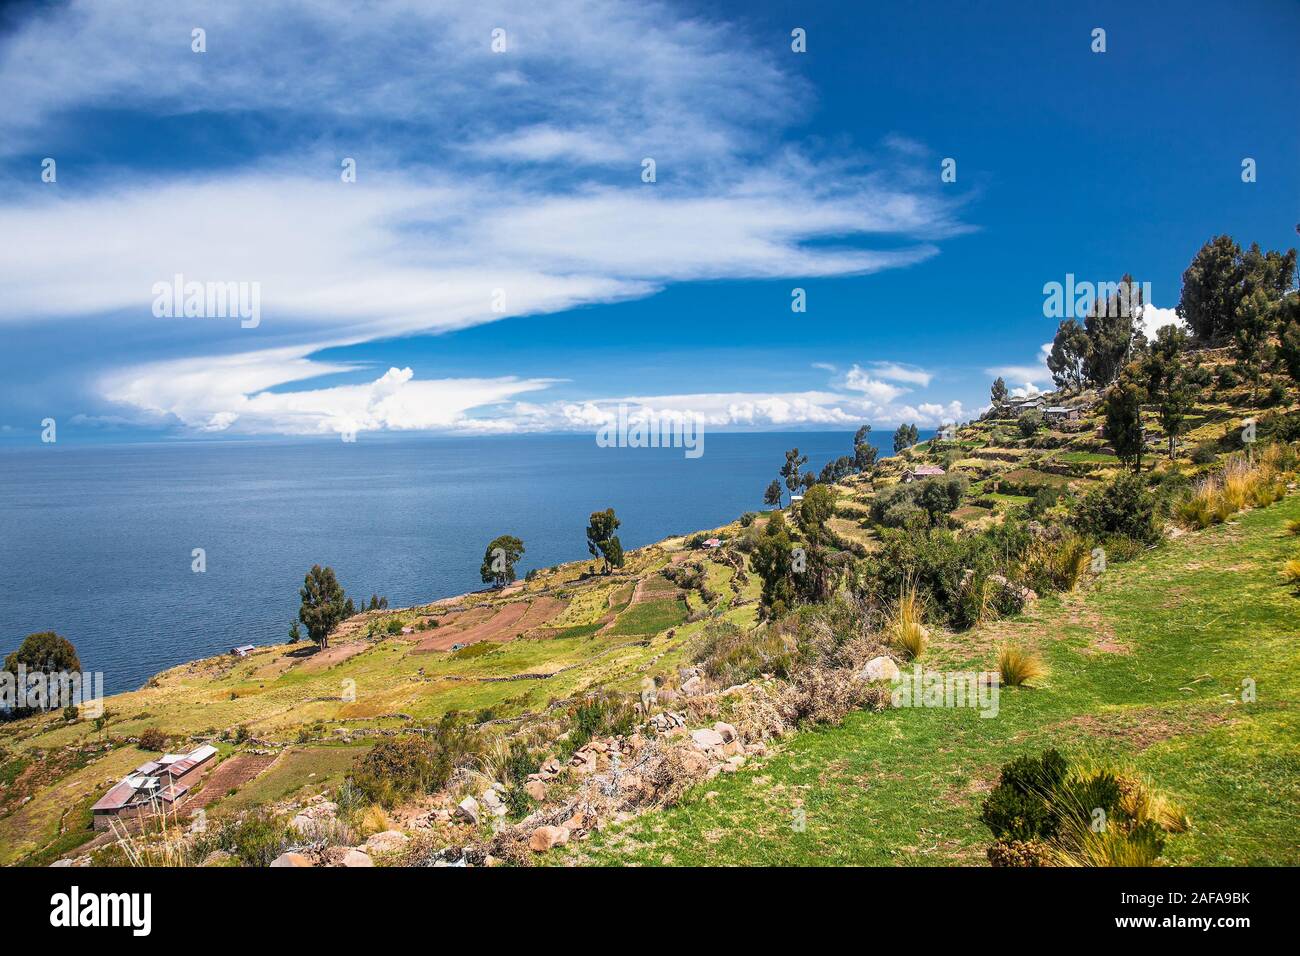 Vista panoramica dal villaggio su Taquile isola nel lago Titicaca, Perù. Sud America. Foto Stock